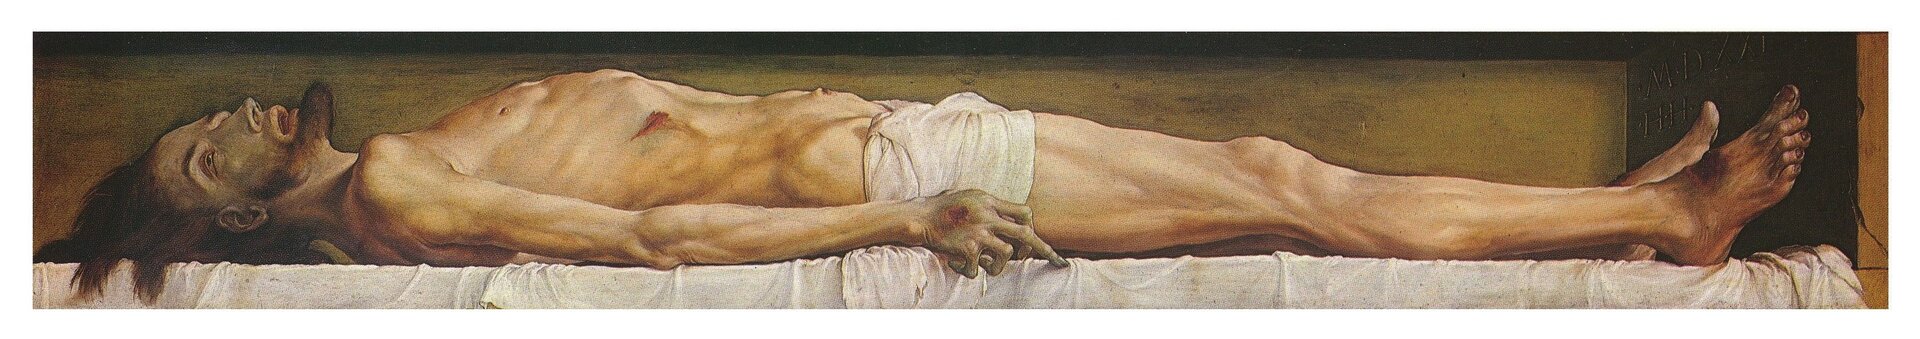 Ilustracja przedstawia obraz Hansa Holbeina „Martwy Chrystus”. Na obrazie znajduje się martwy Chrystus. Mężczyzna jest półnagi, w pasie ma jedynie kawałek materiału. Postać leży na białym płótnie. Widoczne są rany na jego dłoniach oraz stopach, z których wypływa krew. Mężczyzna jest bardzo wychudzony, na co wskazują odstające żebra.